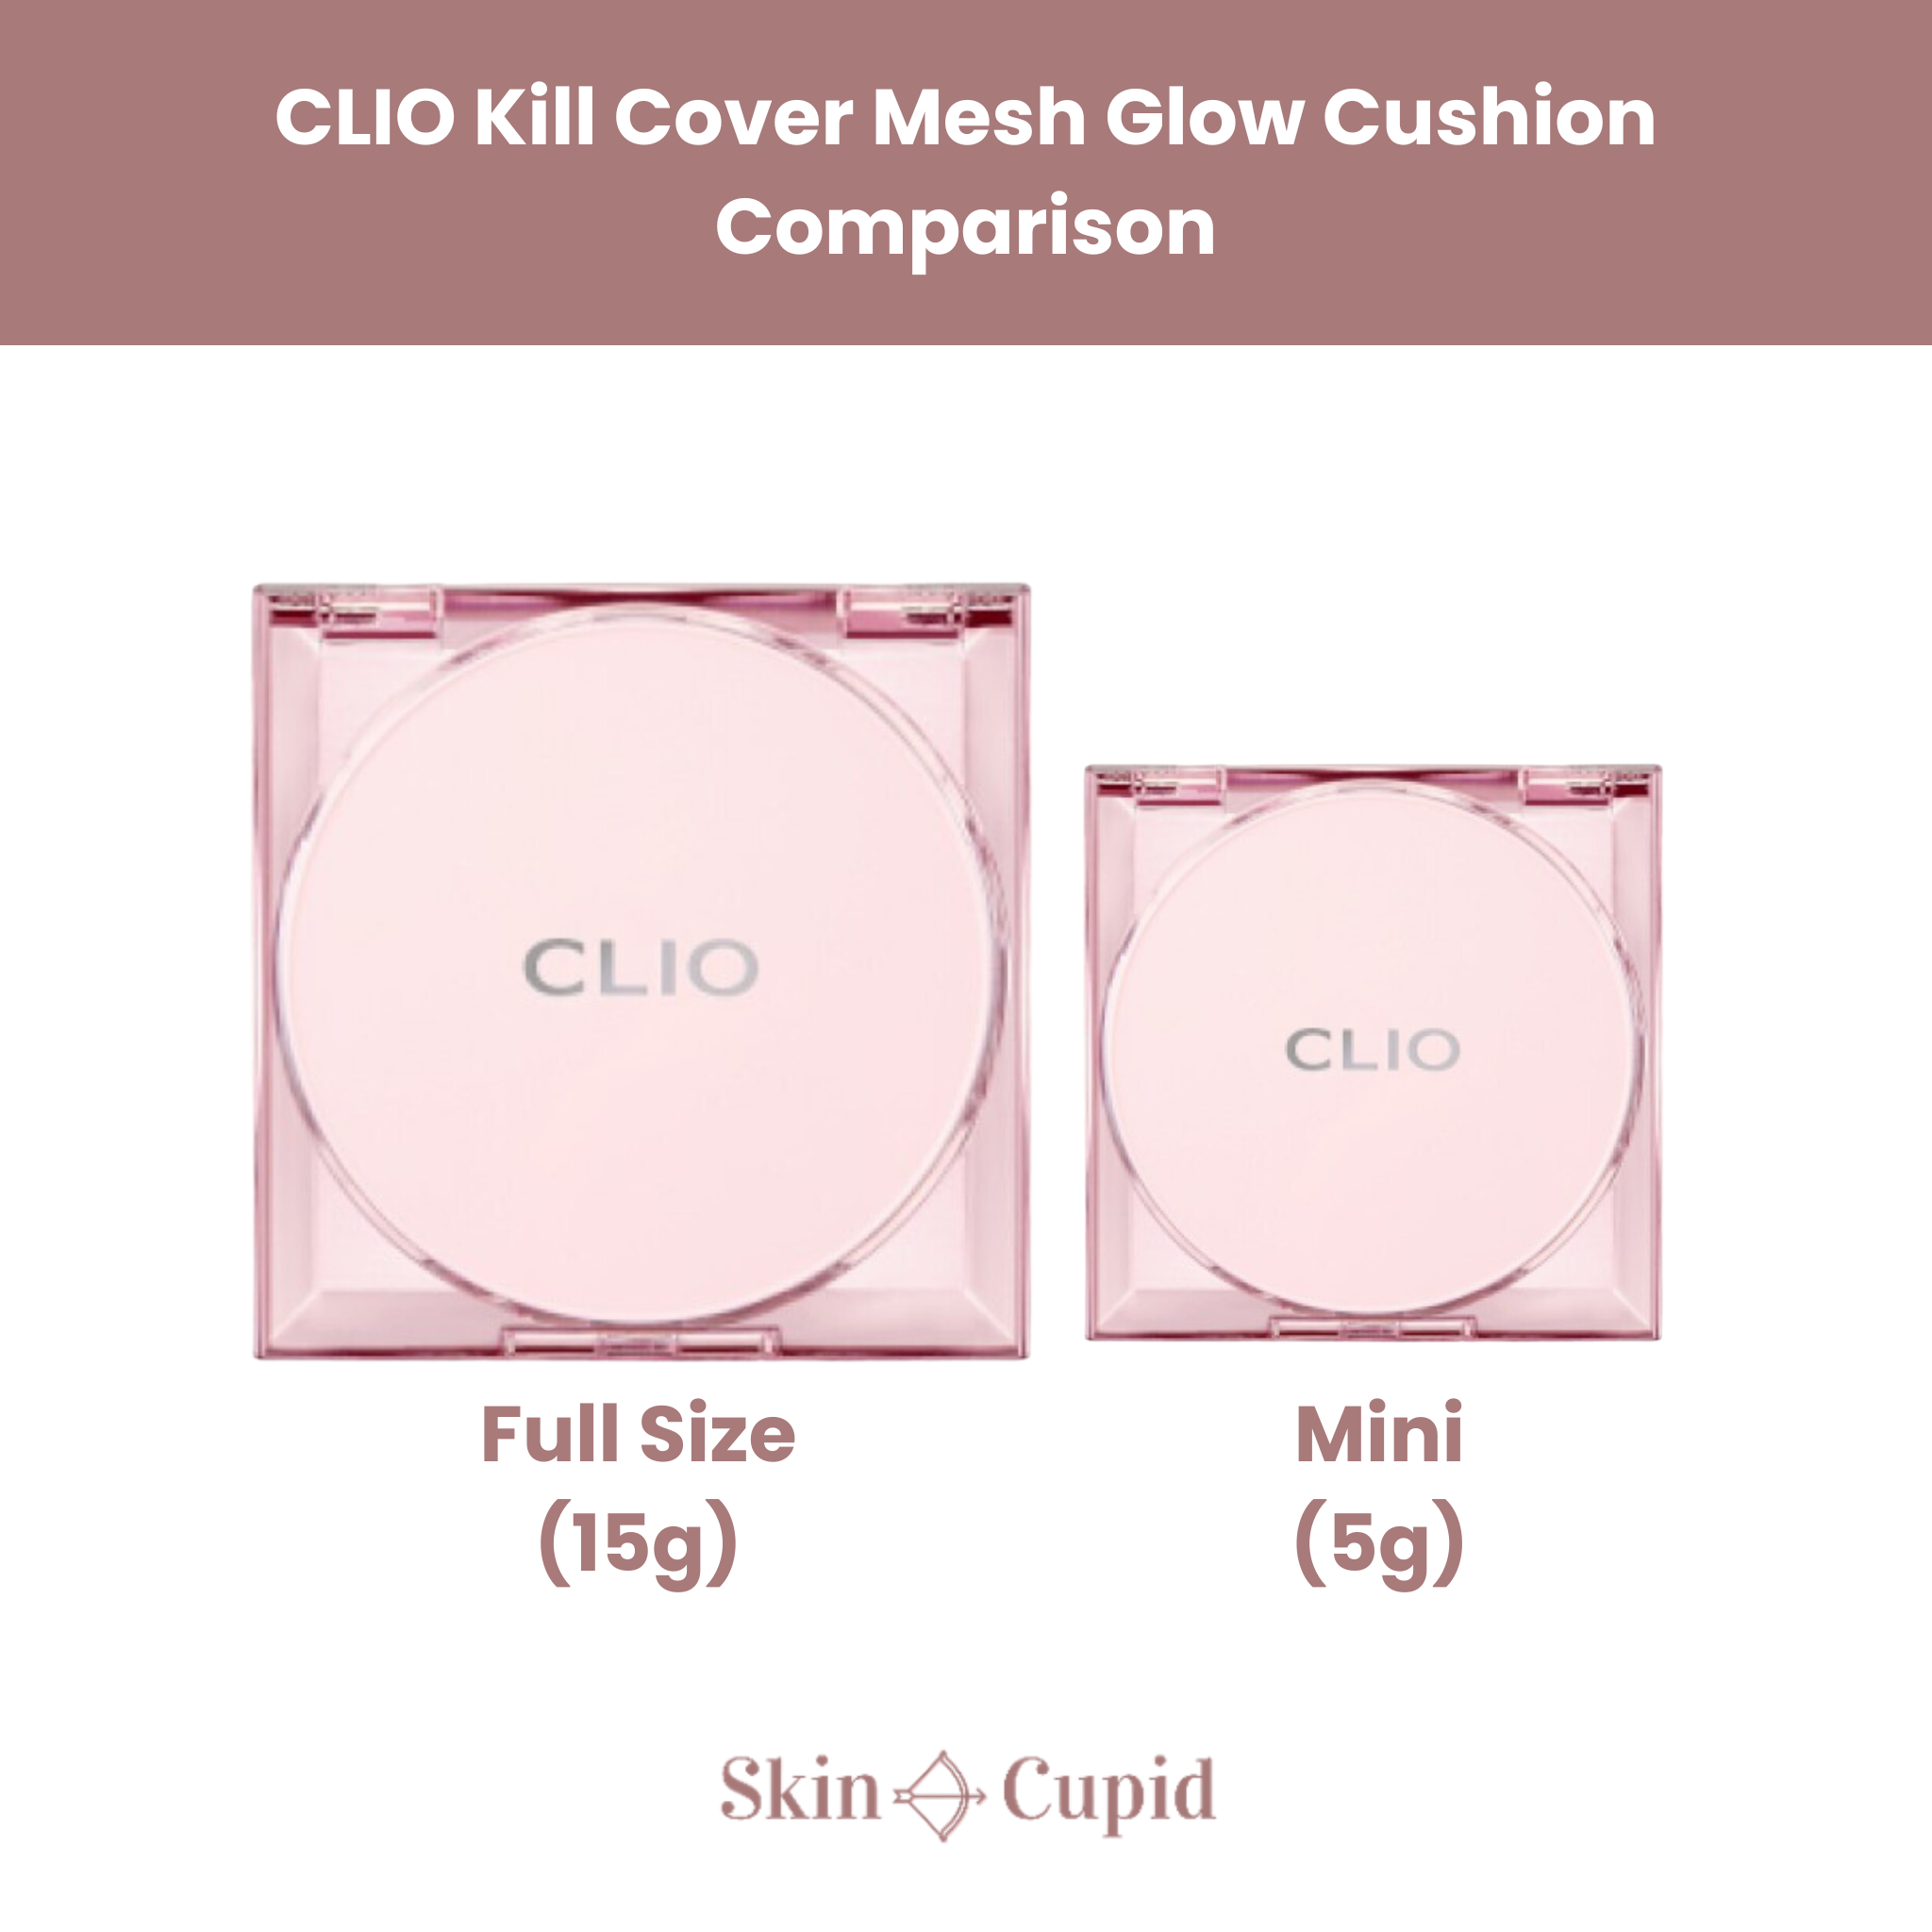 CLIO Kill Cover Mesh Glow Cushion Mini - 3 shades